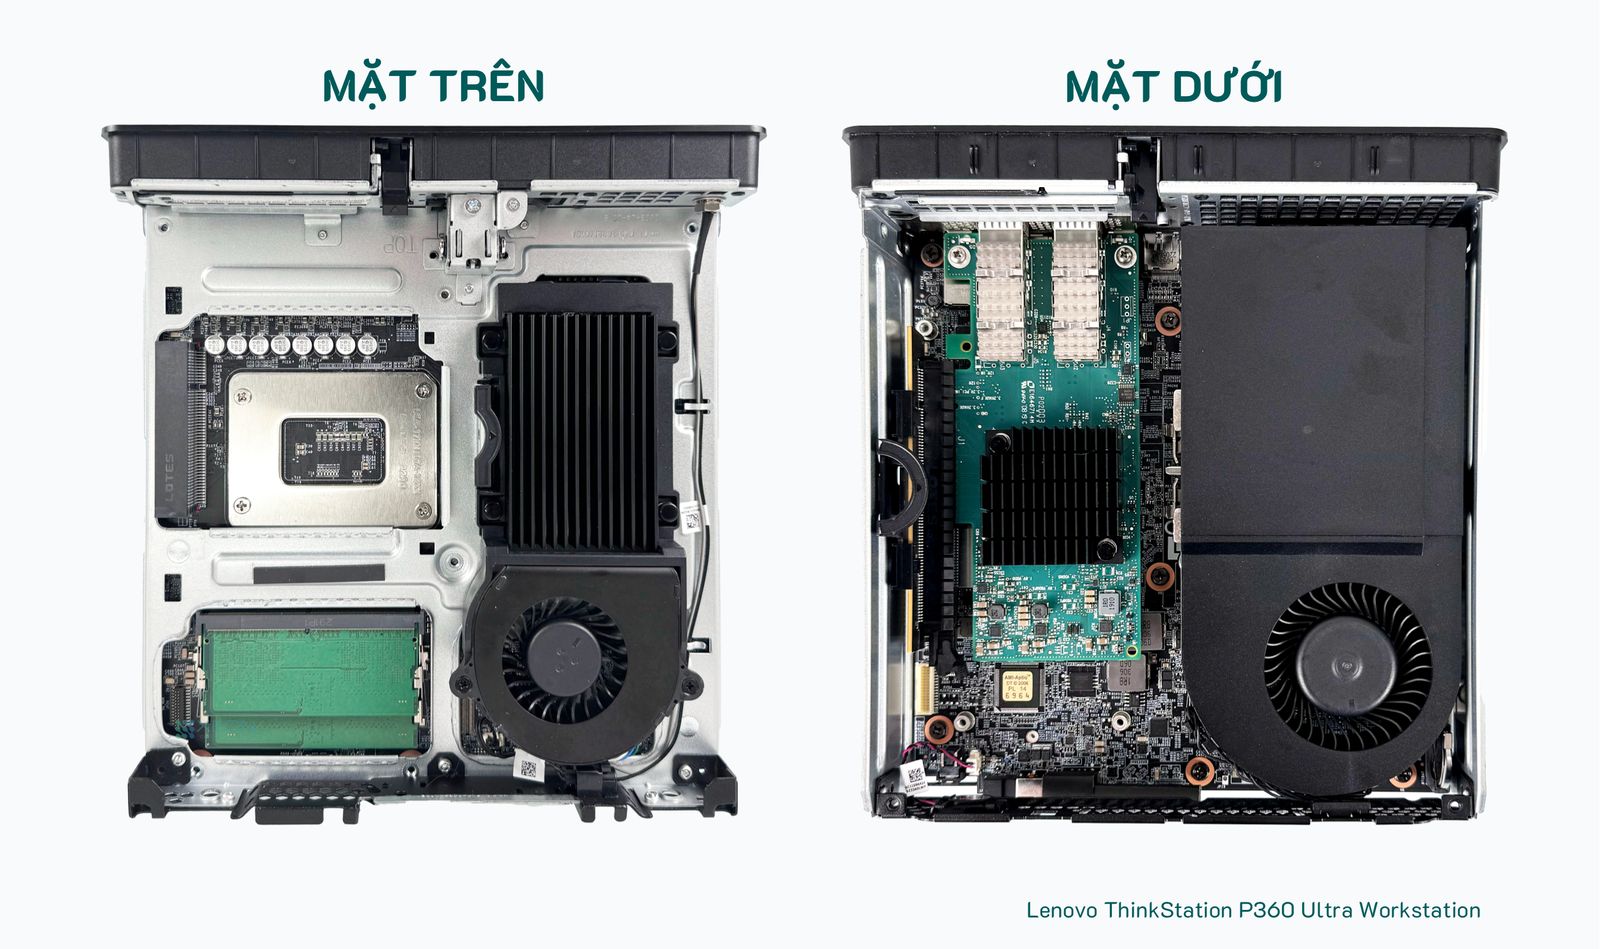 Thiết kế trên cả 2 mặt bo mạch của của Lenovo P360 Ultra